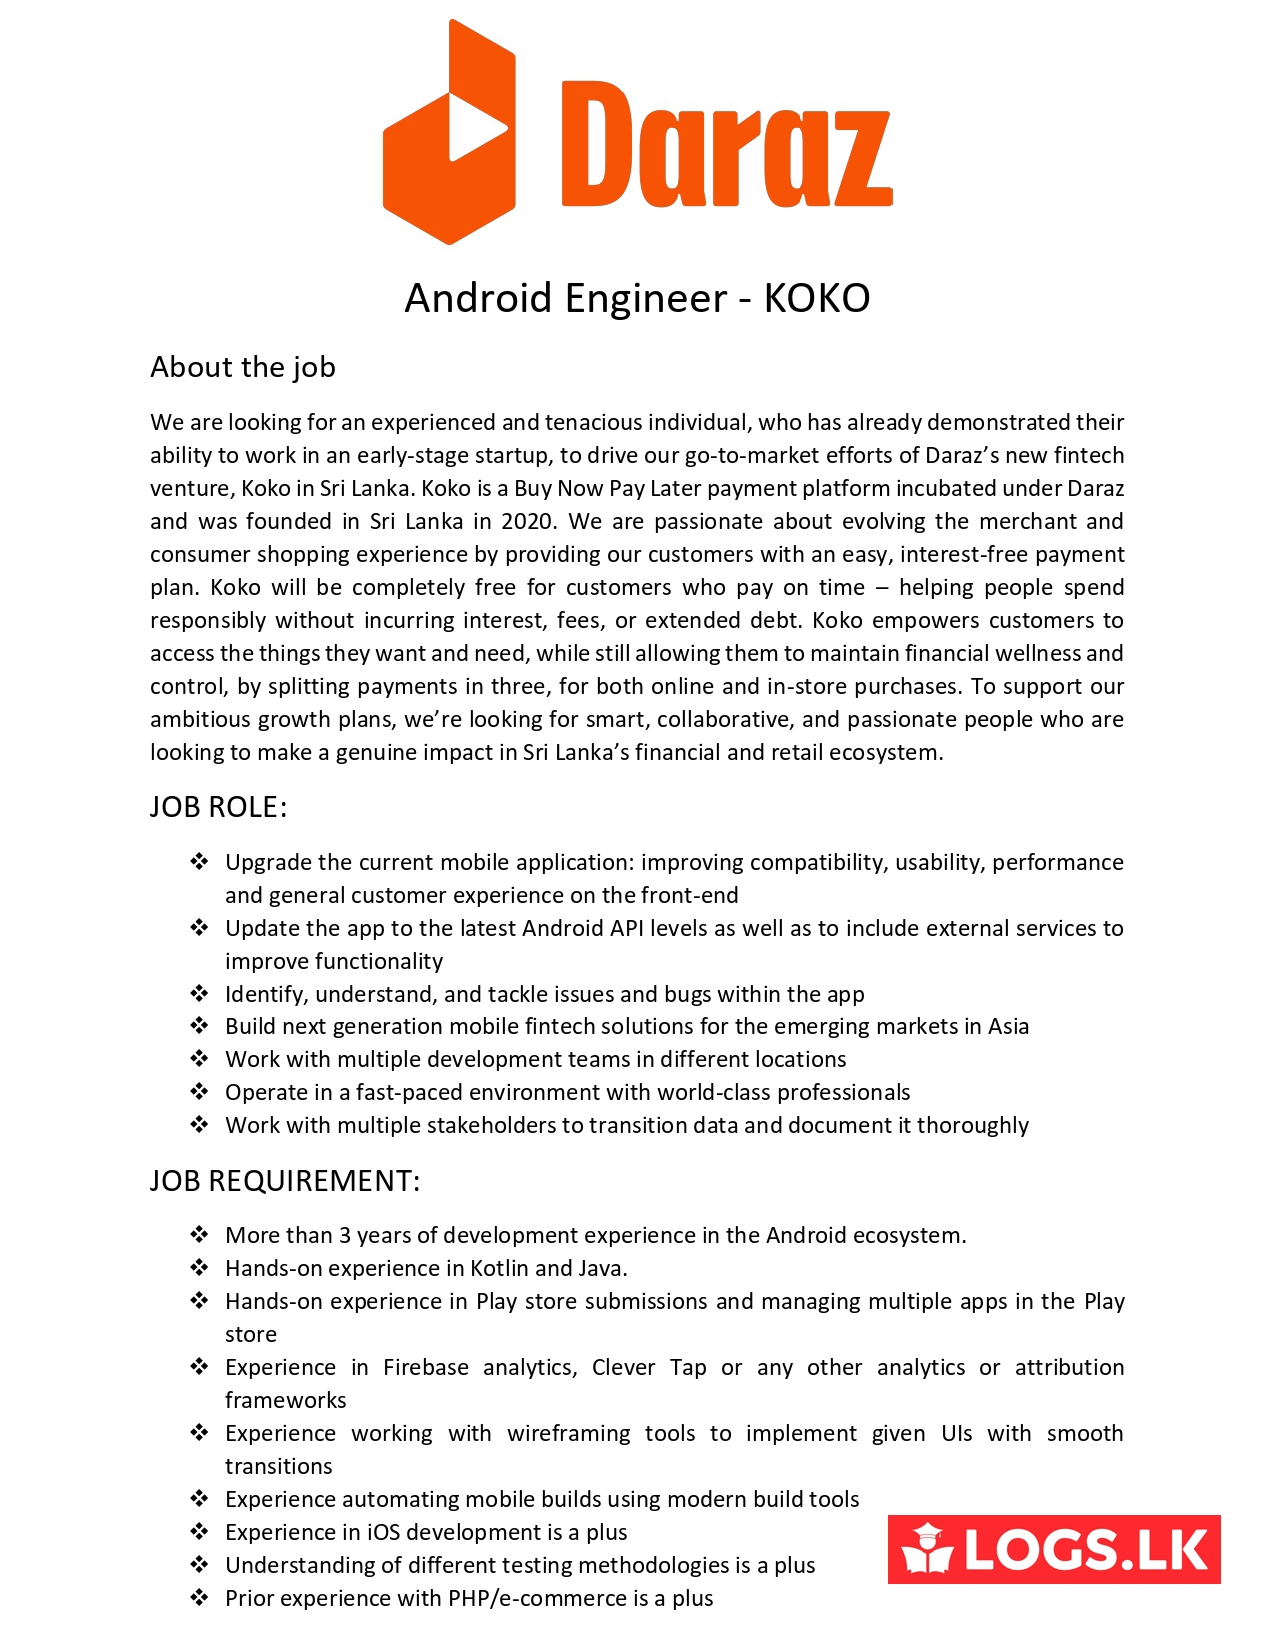 Android Engineer - KOKO Jobs Vacancies - Daraz Sri Lanka Jobs Vacancies